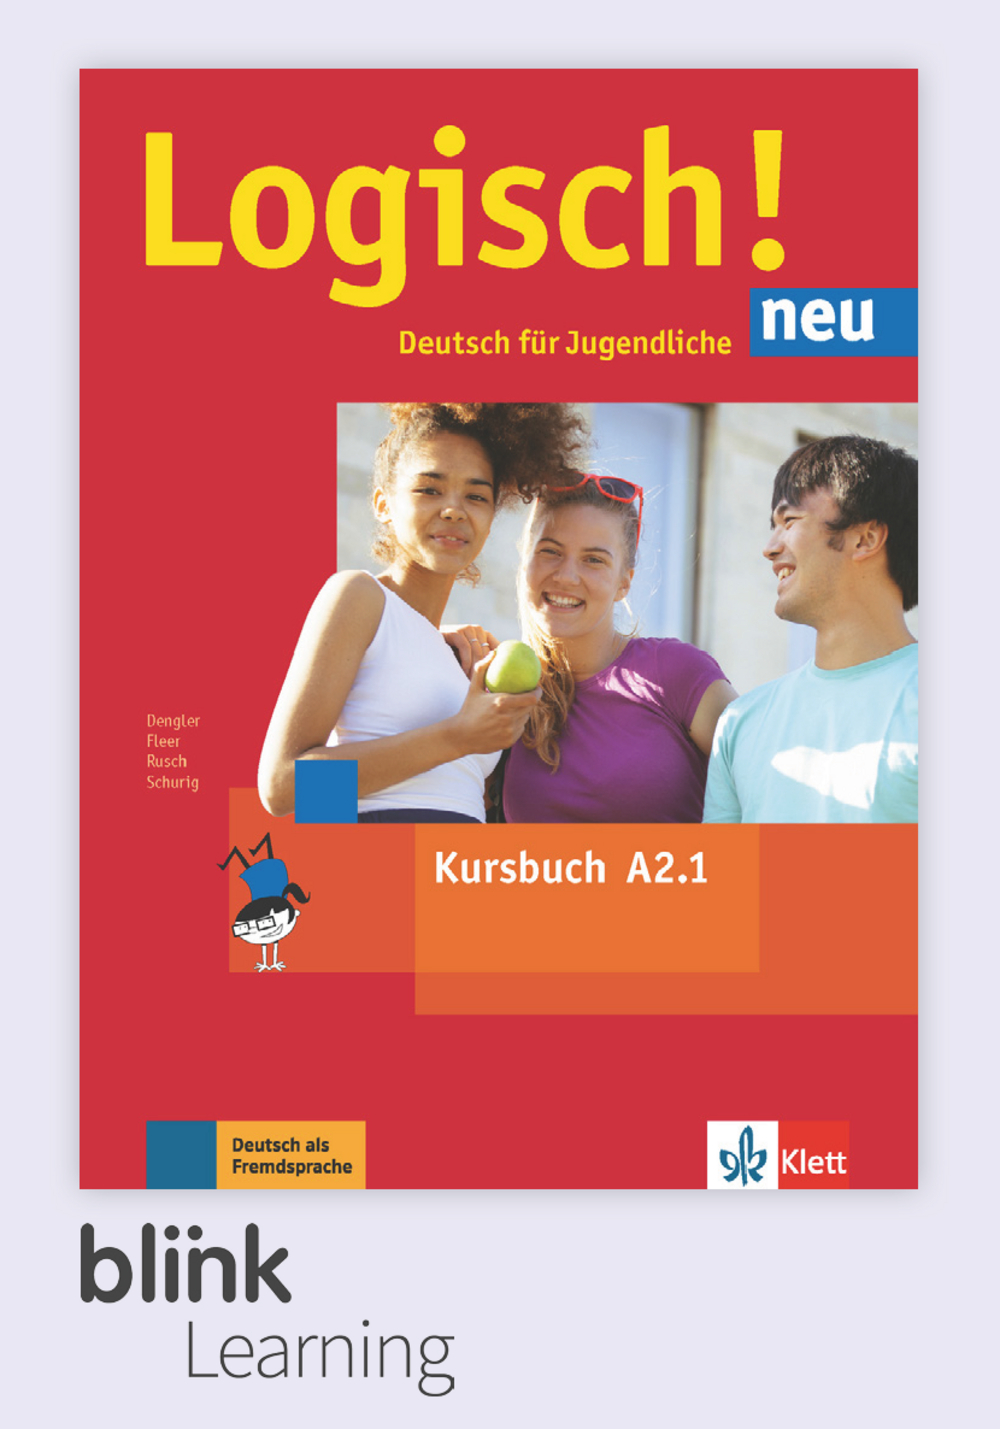 Logisch! neu A2.1 Digital Kursbuch fur Lernende / Цифровой учебник для ученика